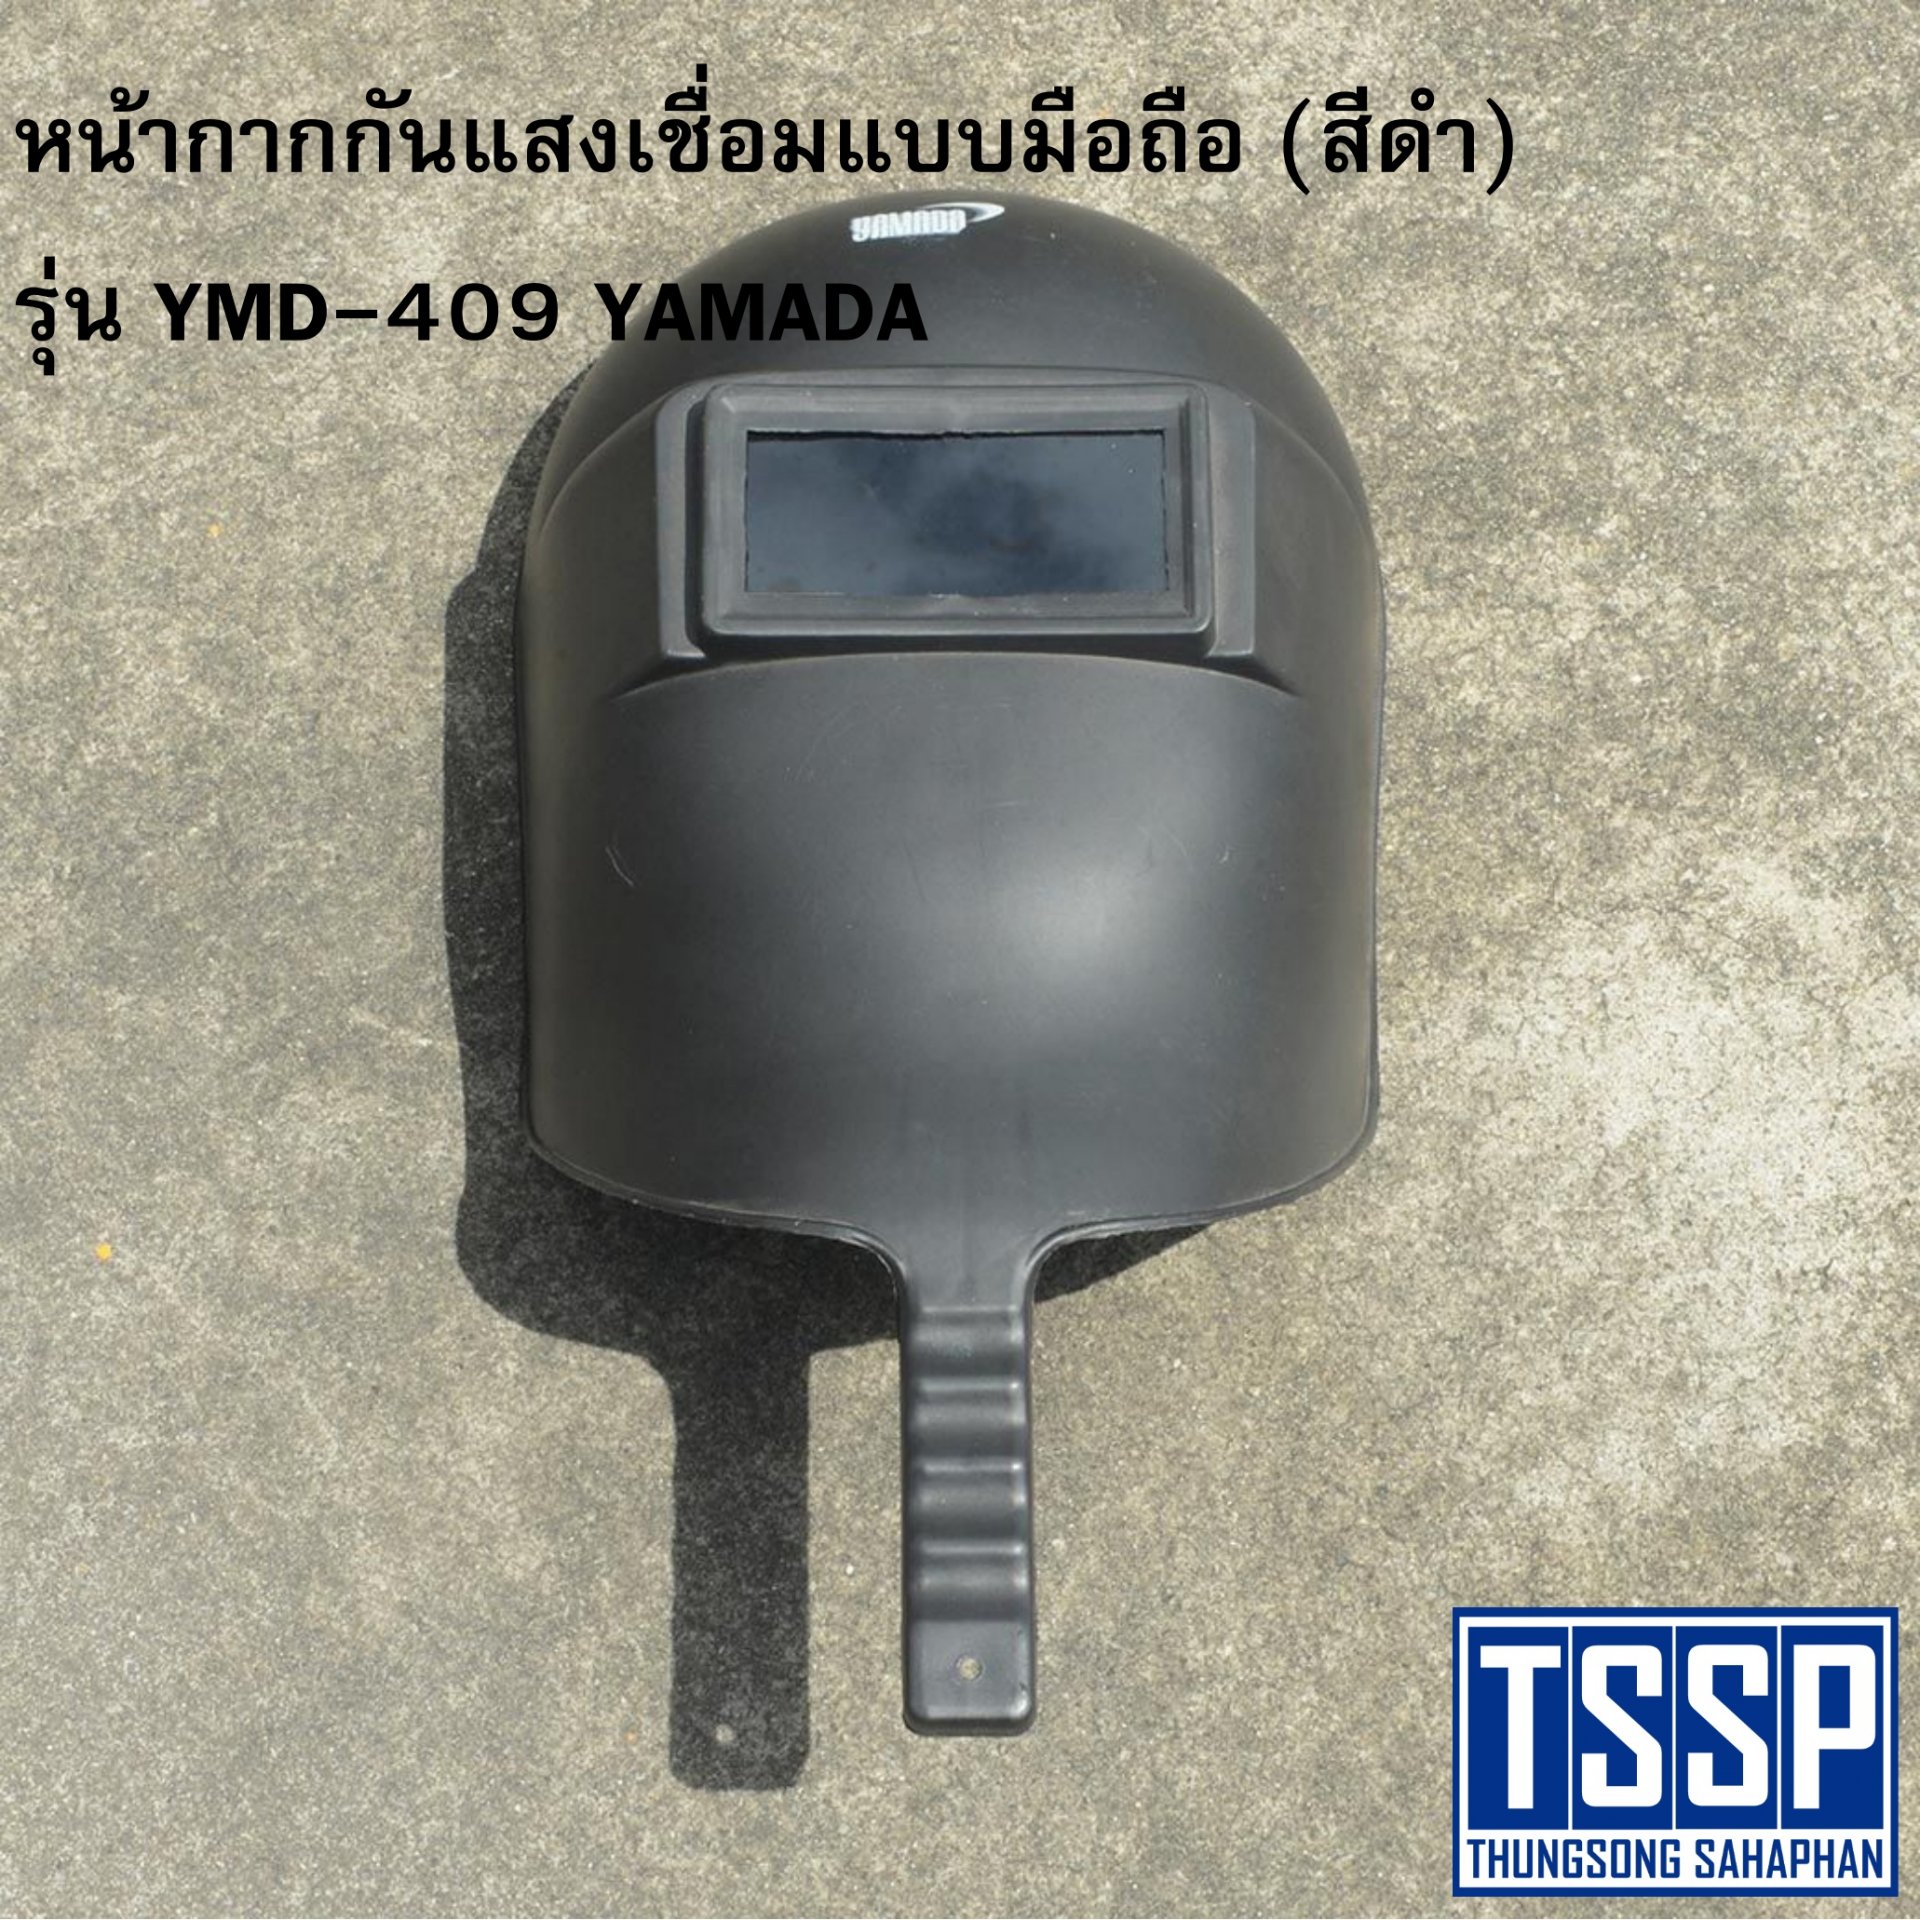 หน้ากากกันแสงเชื่อมแบบมือถือ (สีดำ) รุ่น YMD-409 YAMADA